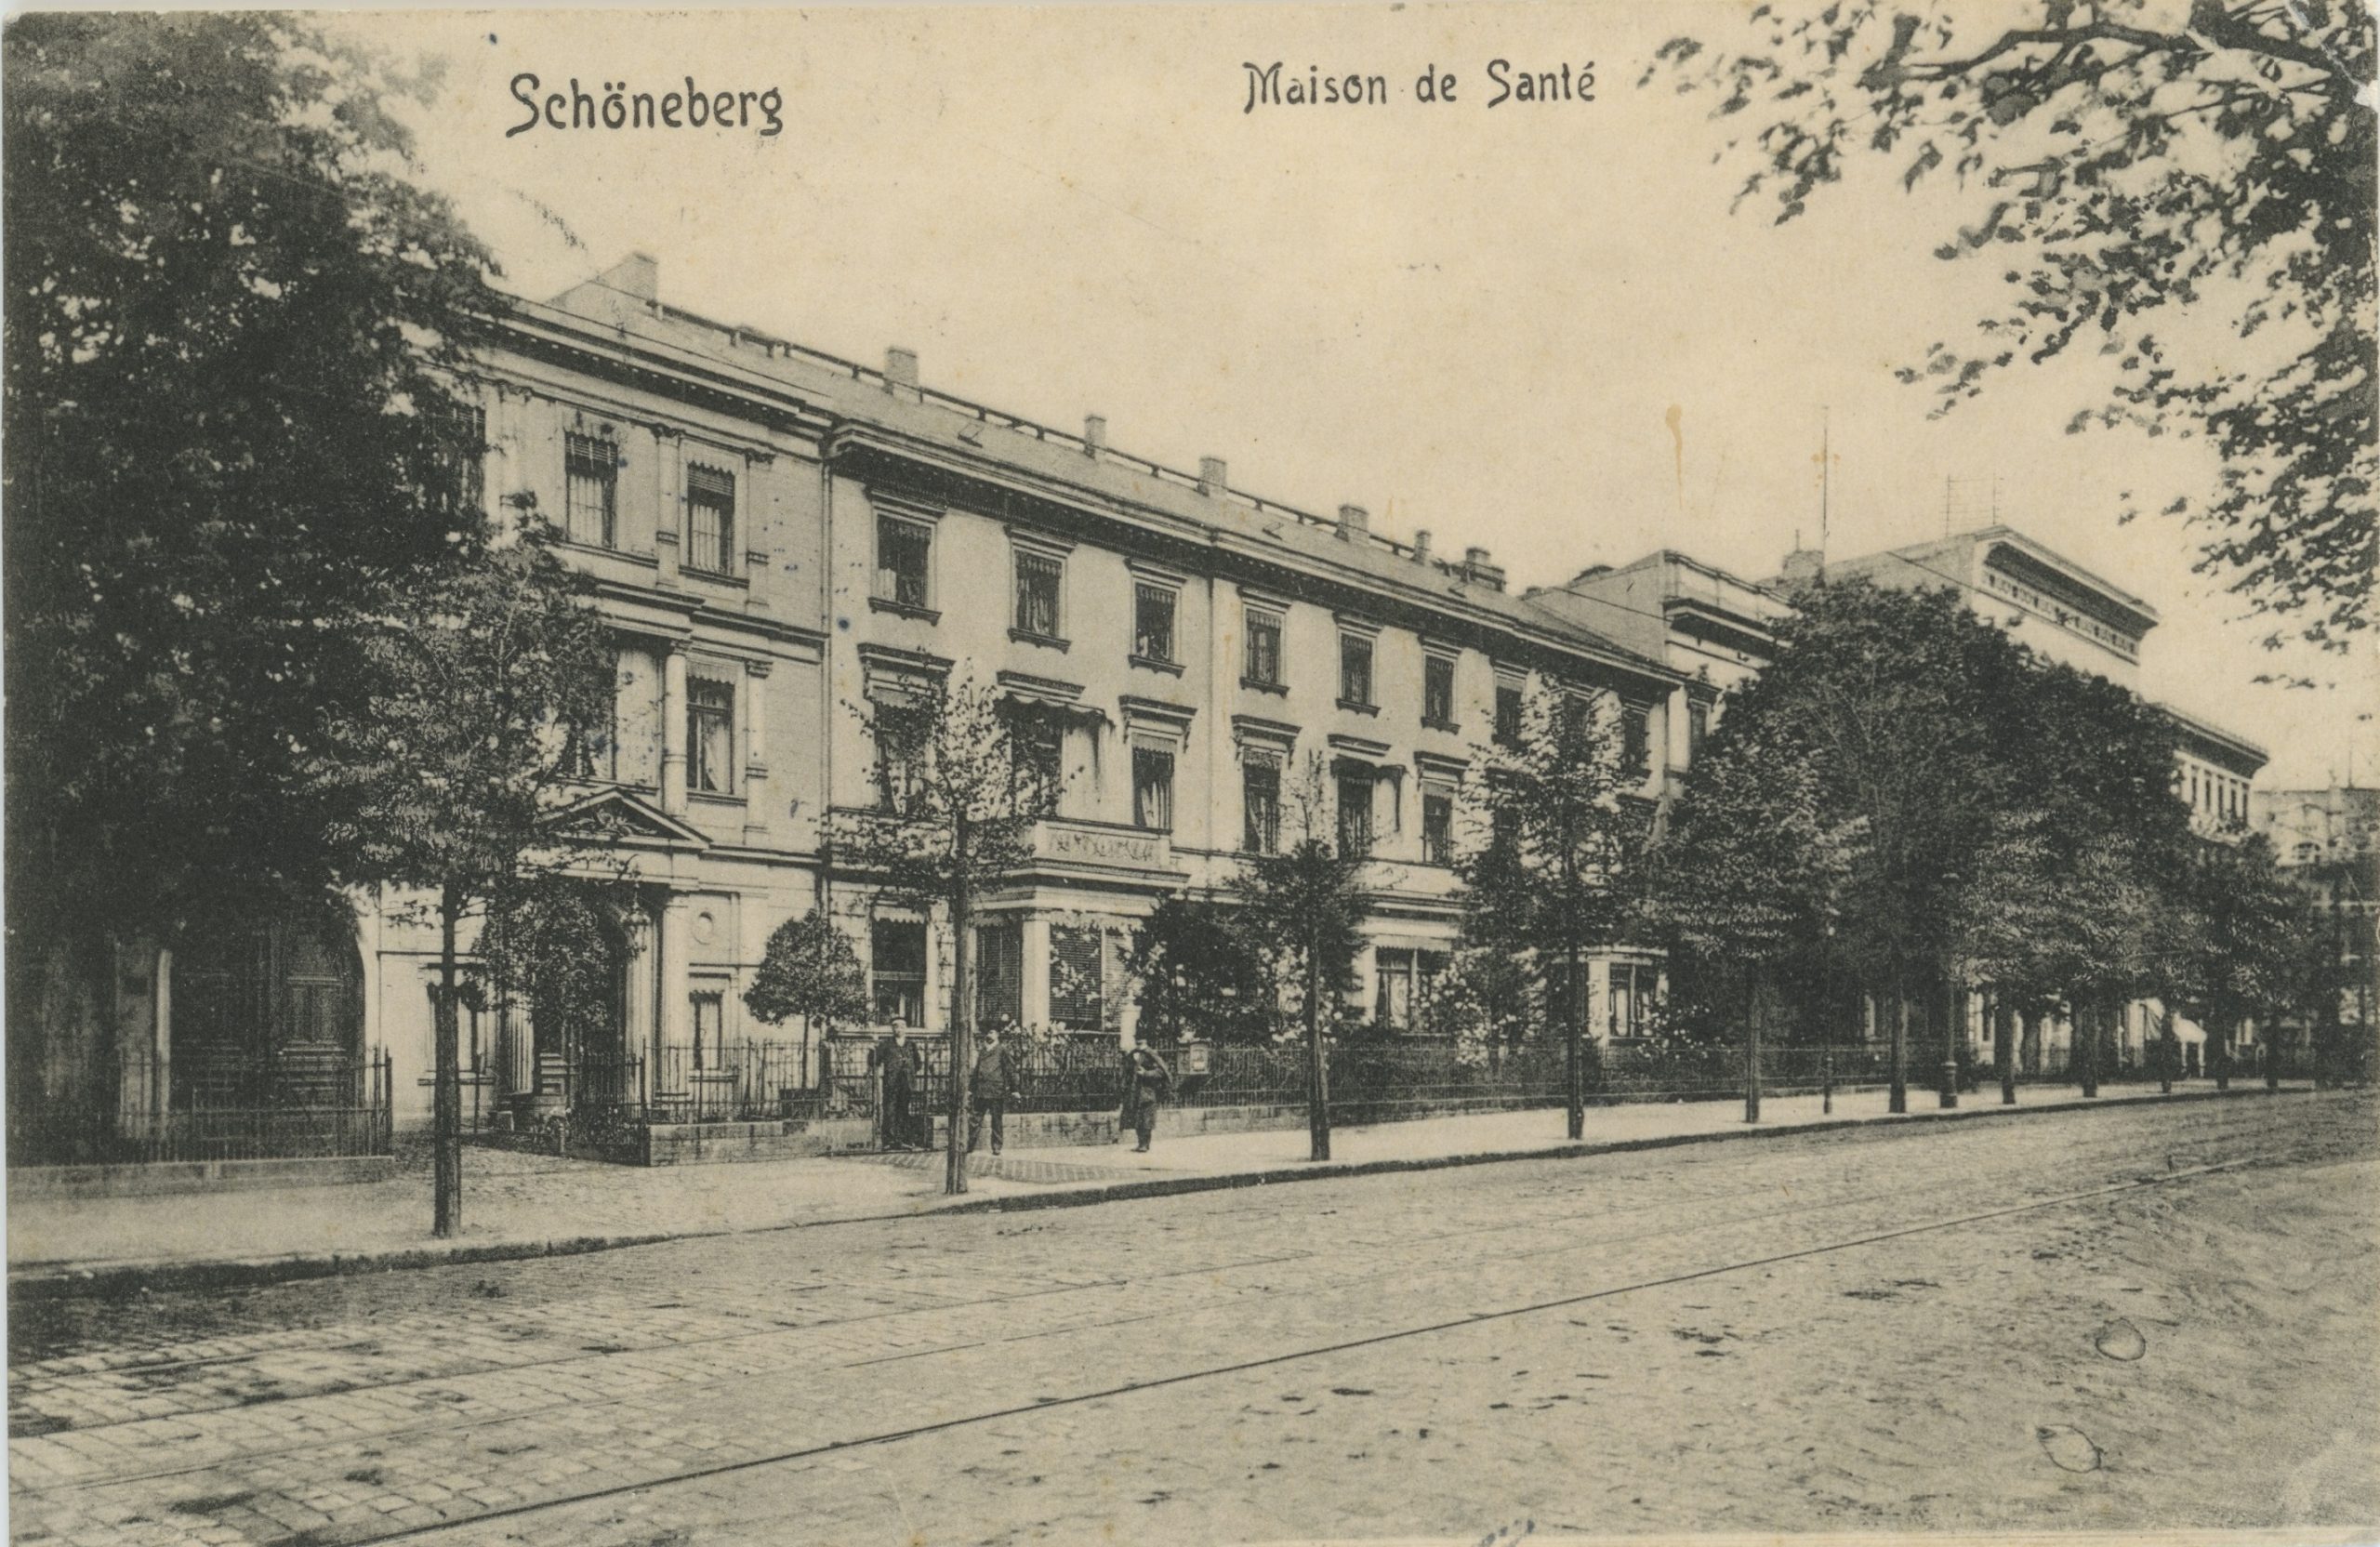 BezirksTOUR: Vom Kirchhof Alt-Schöneberg zur Maison de Santé in Neu-Schöneberg: Auf den Spuren der Familie Levinstein